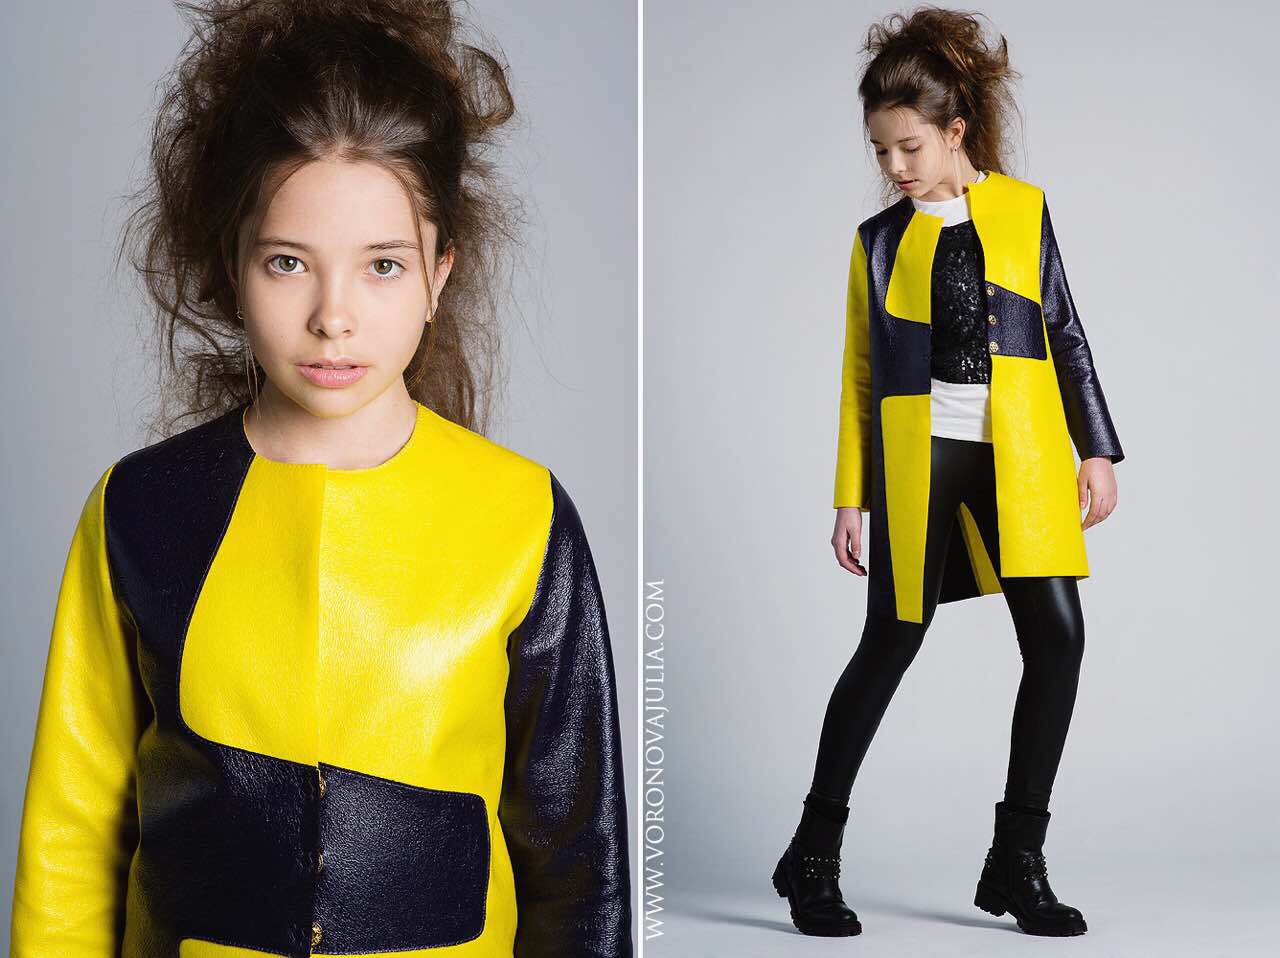 Соня Зайцева - аккредитованная модель для участия в подиумных показах на Междунродной Детской Неделе моды